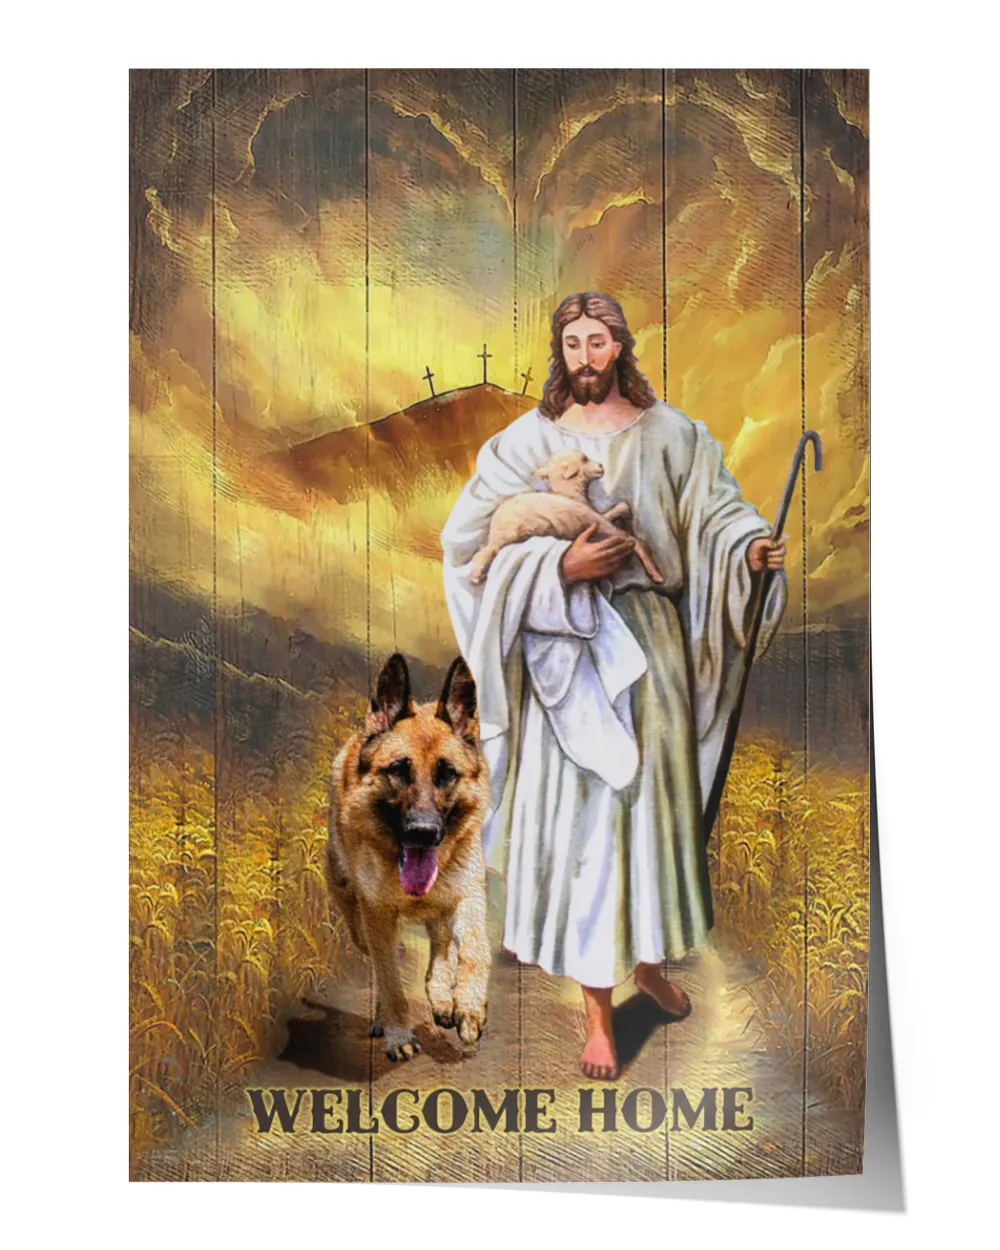 Jesus And German Shepherd Walking